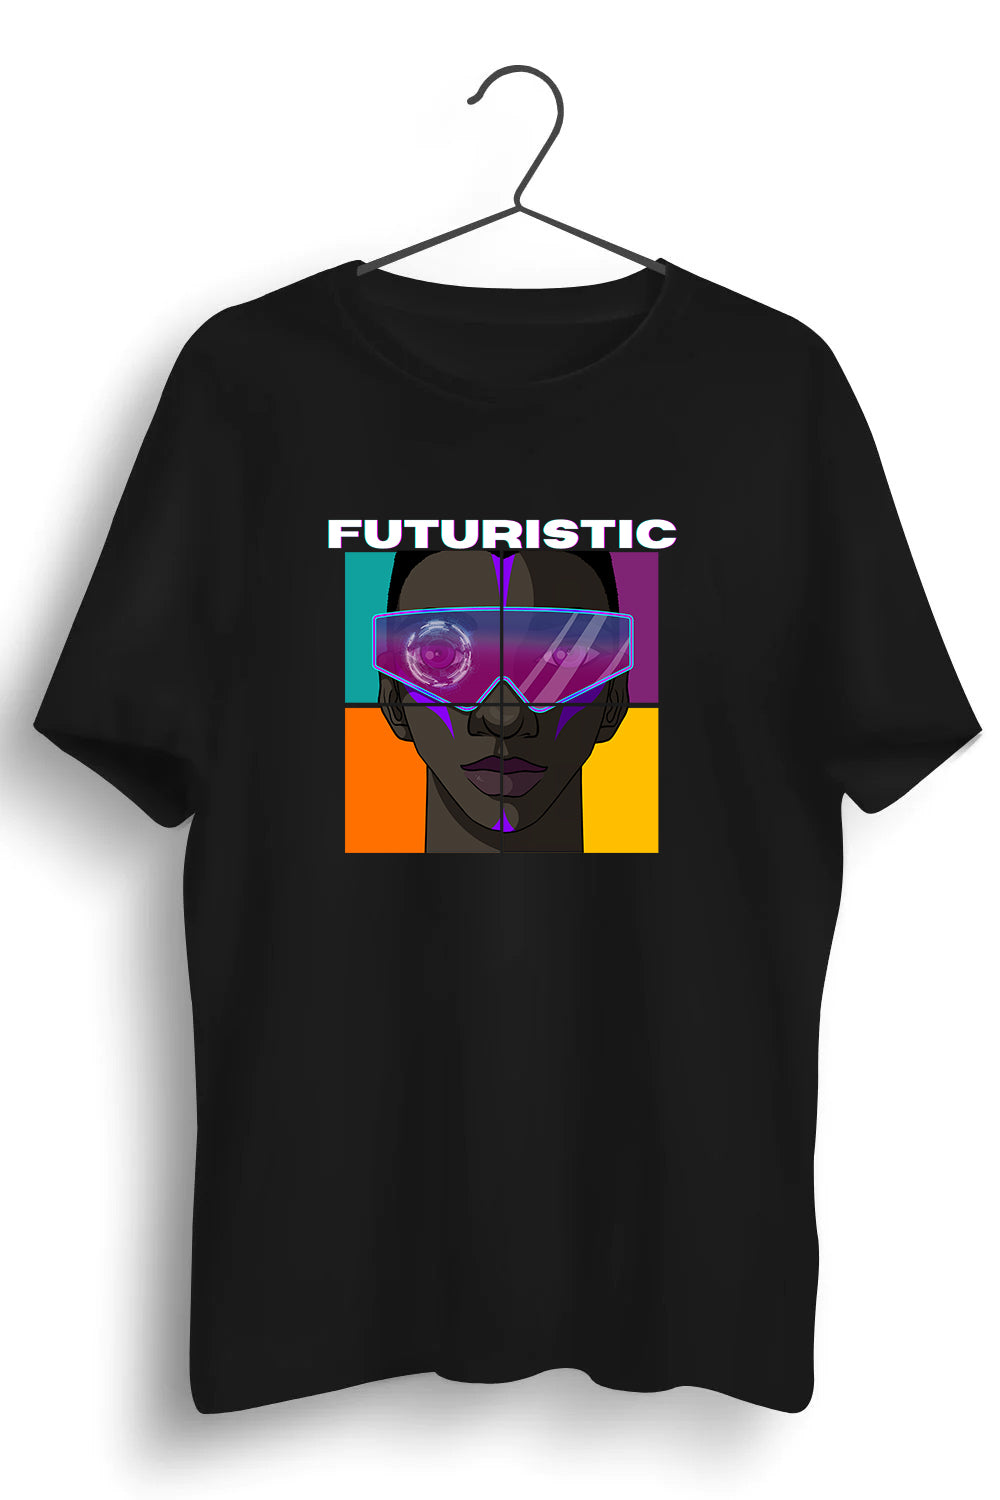 Futuristic Graphic Printed Black Tshirt